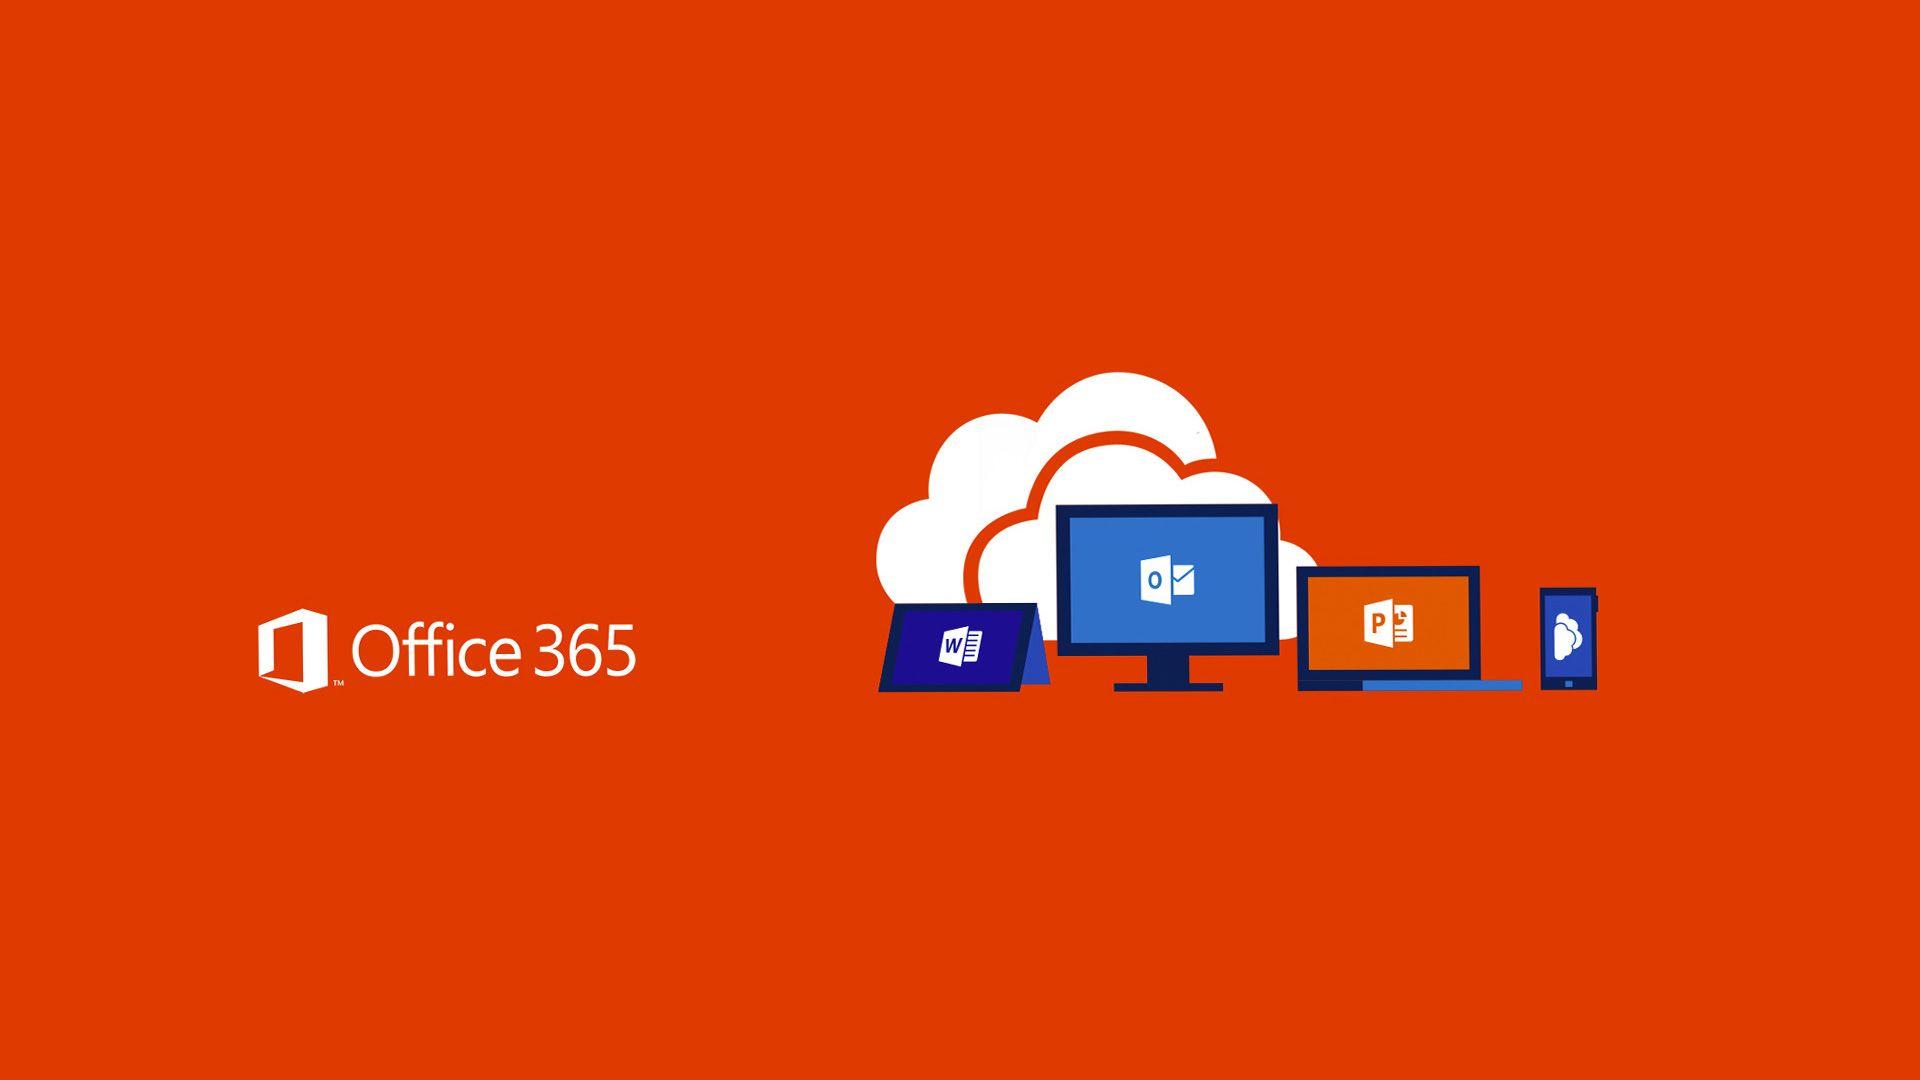 Tình trạng sử dụng đồng nhất một hình nền Office 365 trong một thời gian dài có thể khiến bạn cảm thấy nhàm chán. Hãy đến đây để cập nhật những mẫu hình nền mới nhất của Office 365 và mang đến sự tươi mới cho bài thuyết trình của bạn.